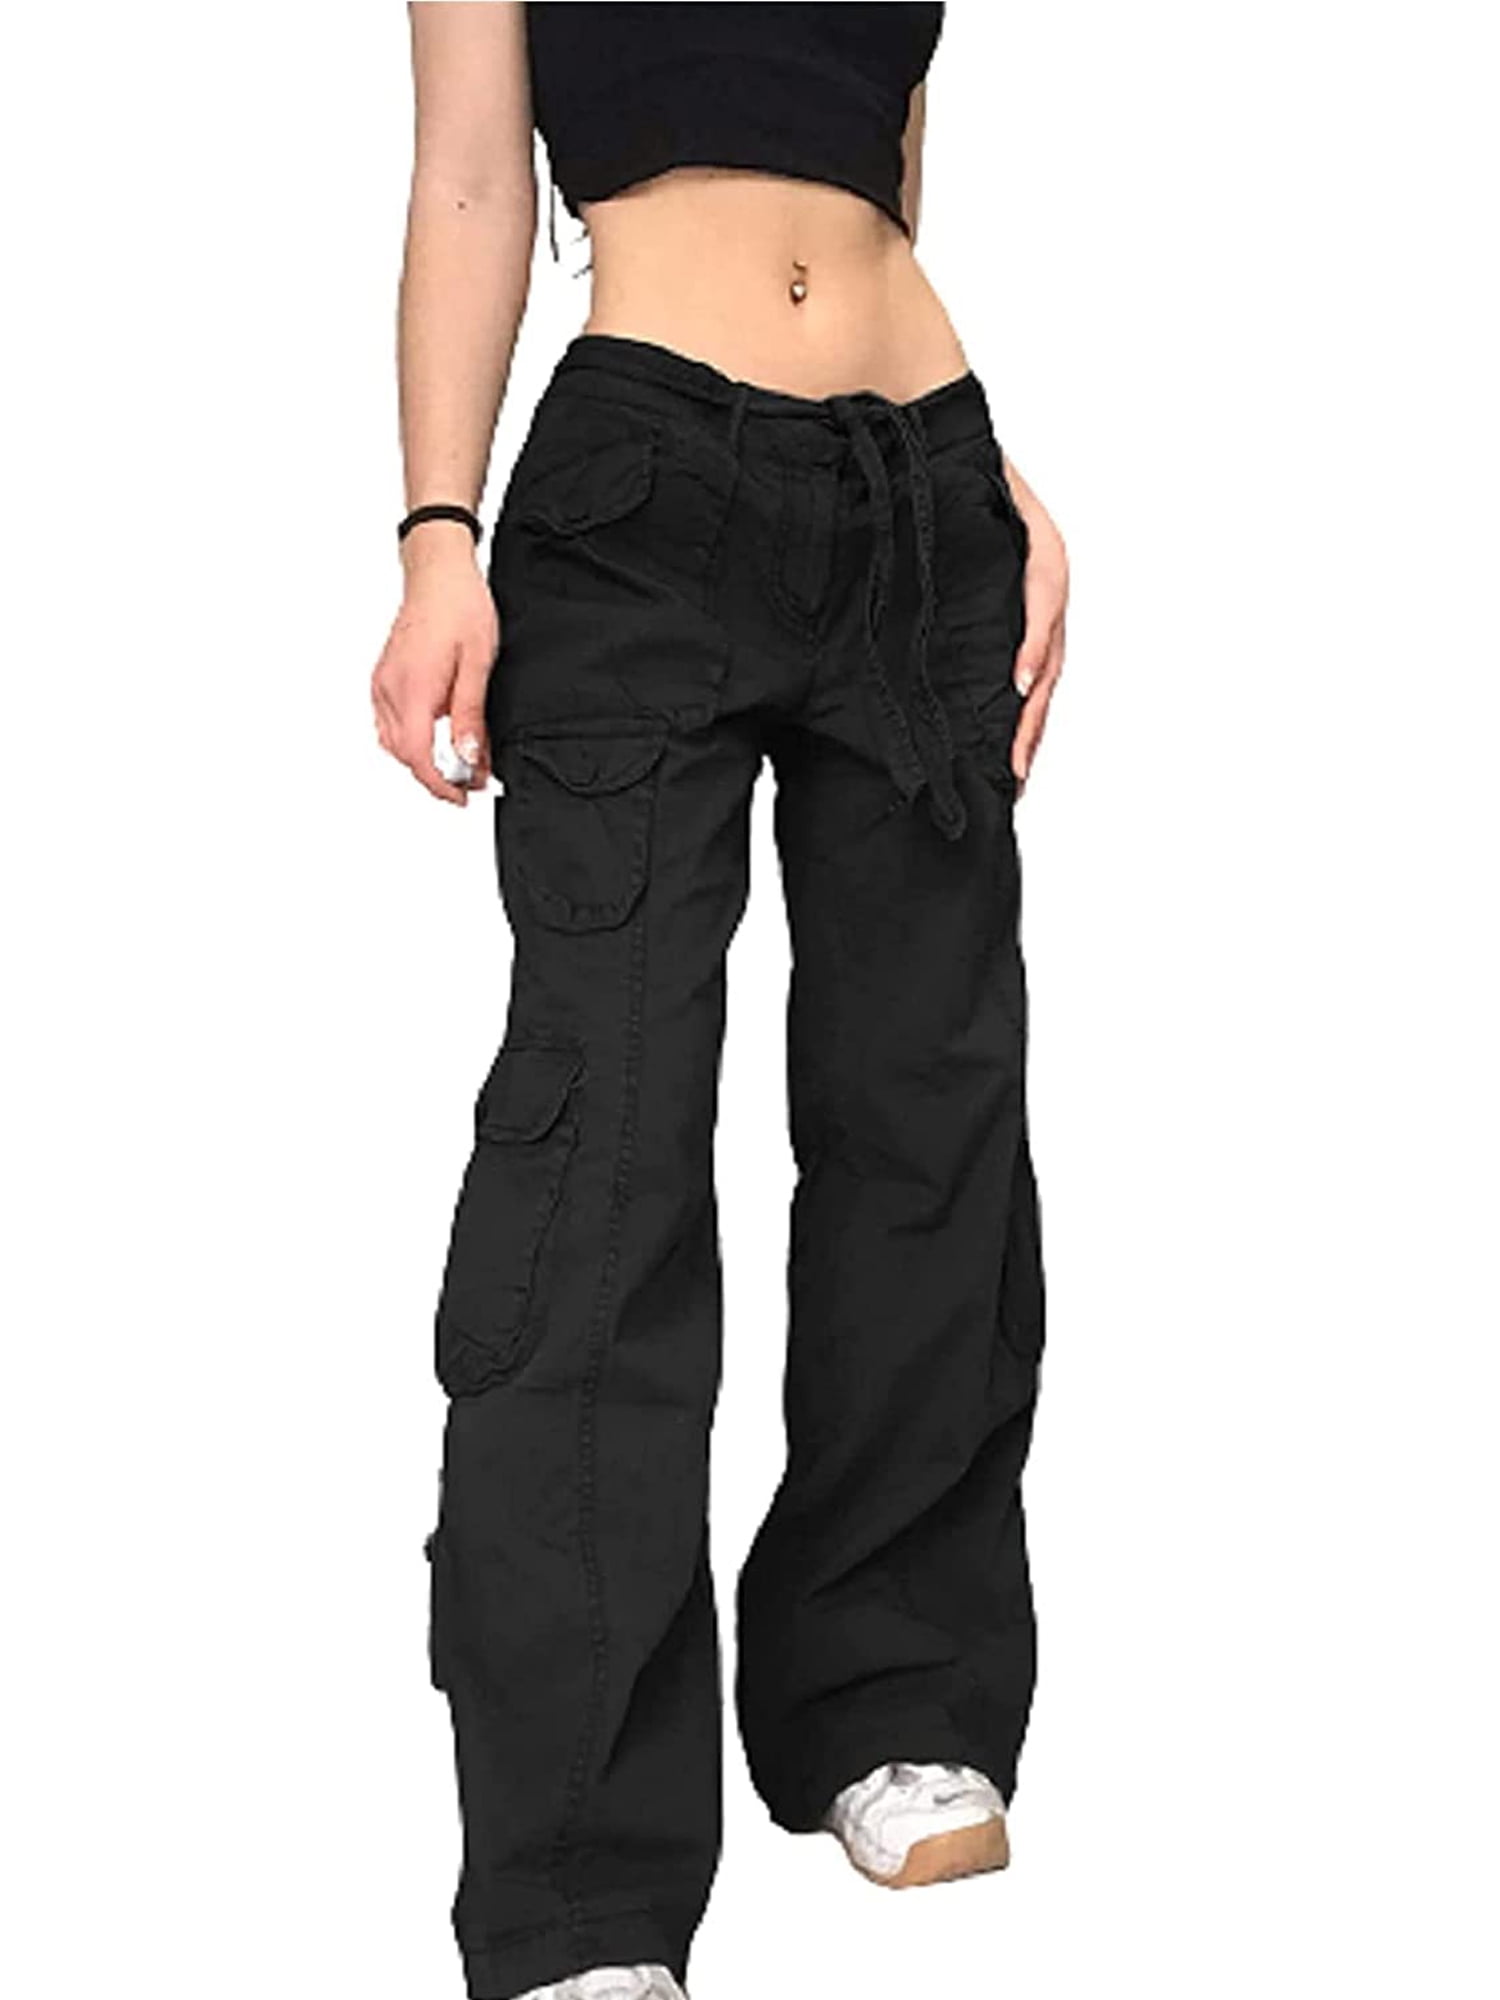 Y2K Grunge Cargo Pants for Women Low Boyfiend Baggy Jeans Vintage Hippie Trousers Streetwear - Walmart.com